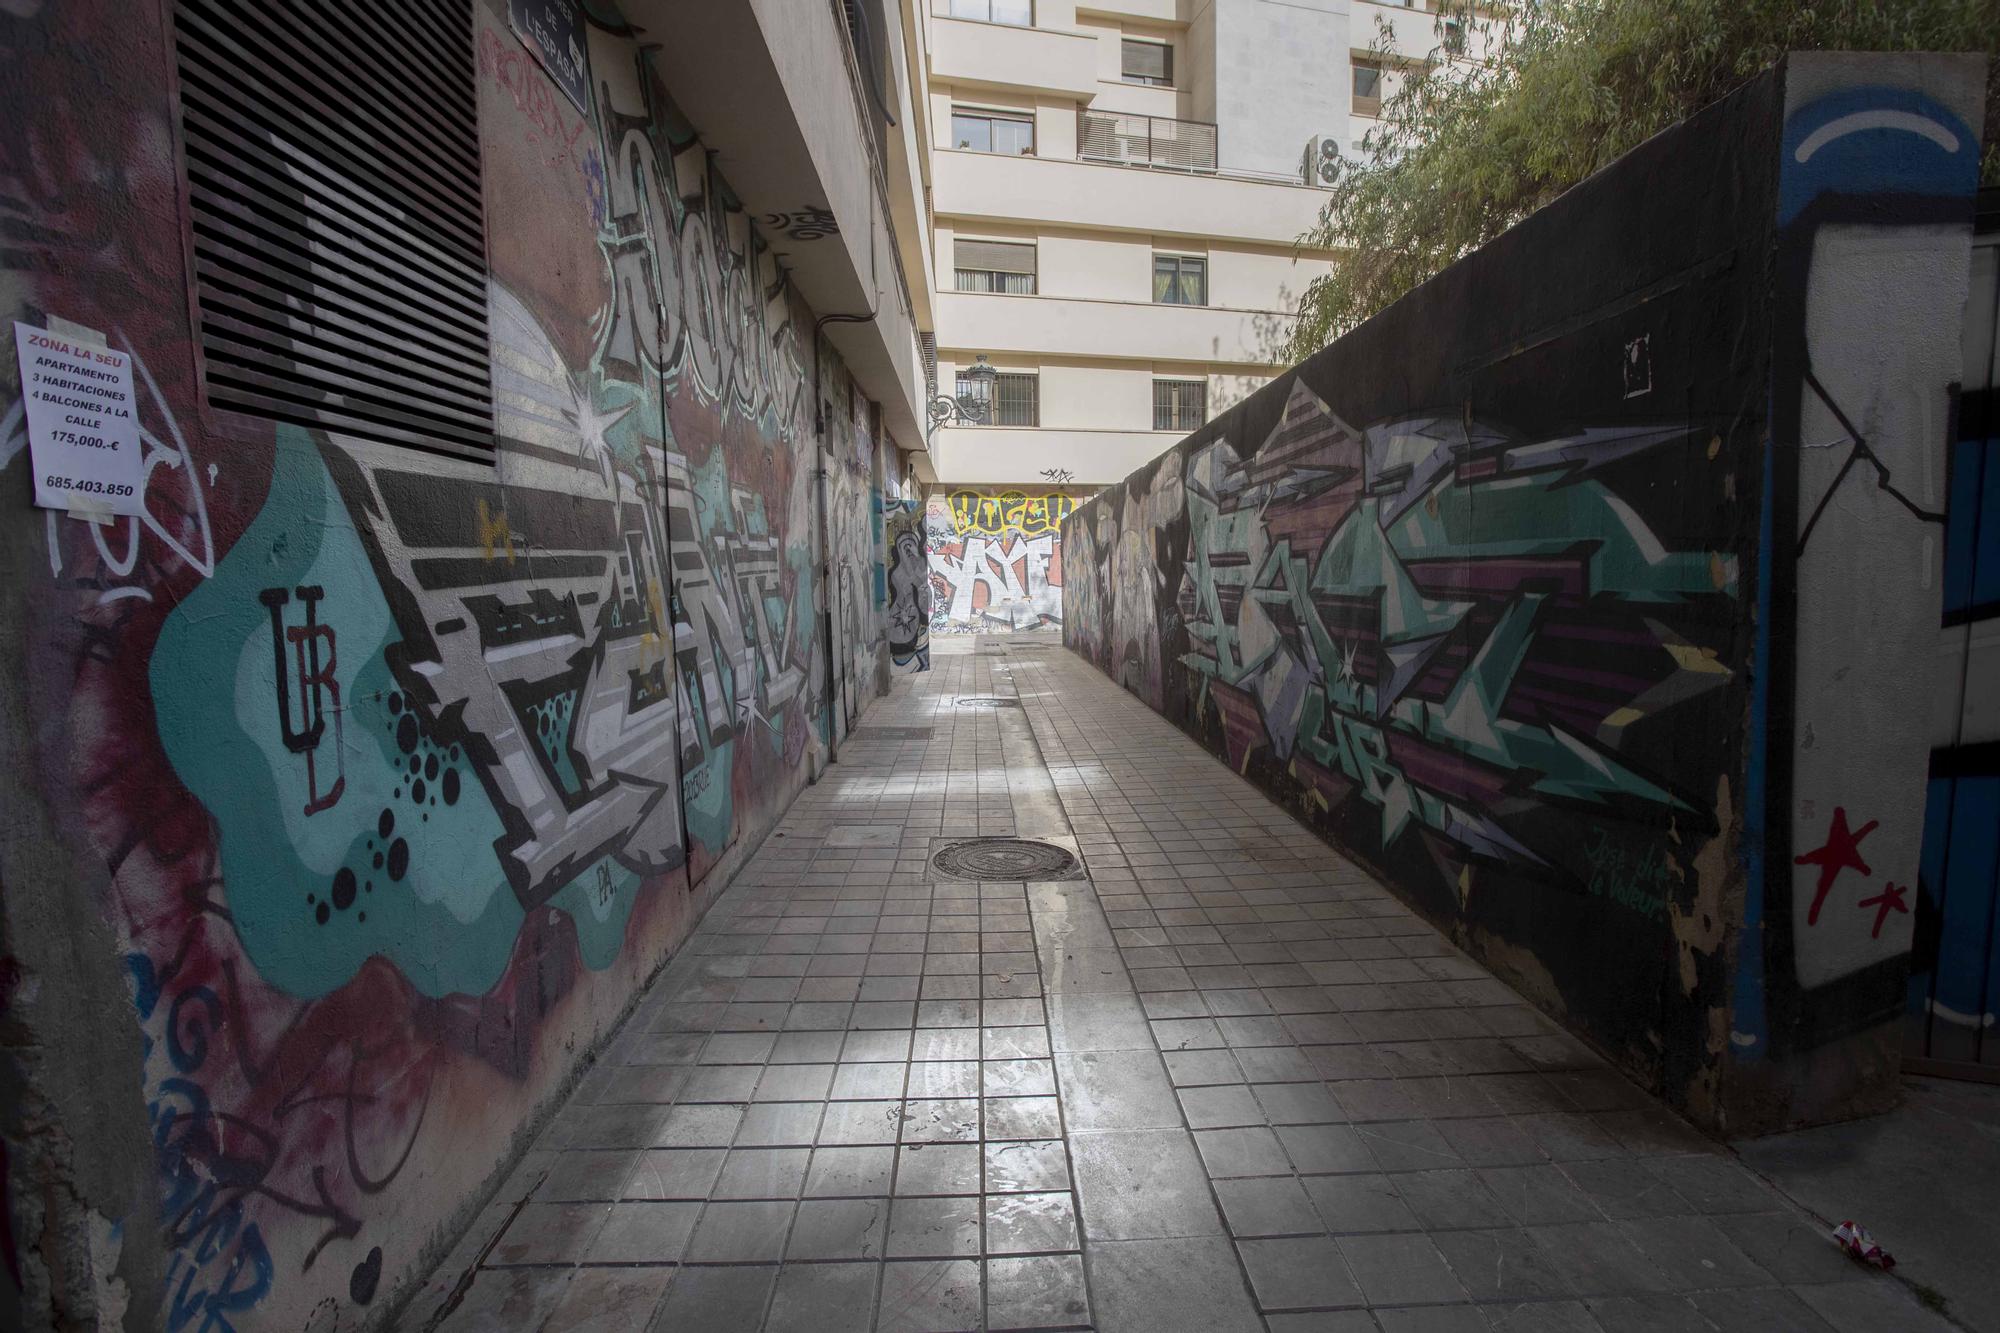 La València insólita en sus callejones sin salida.